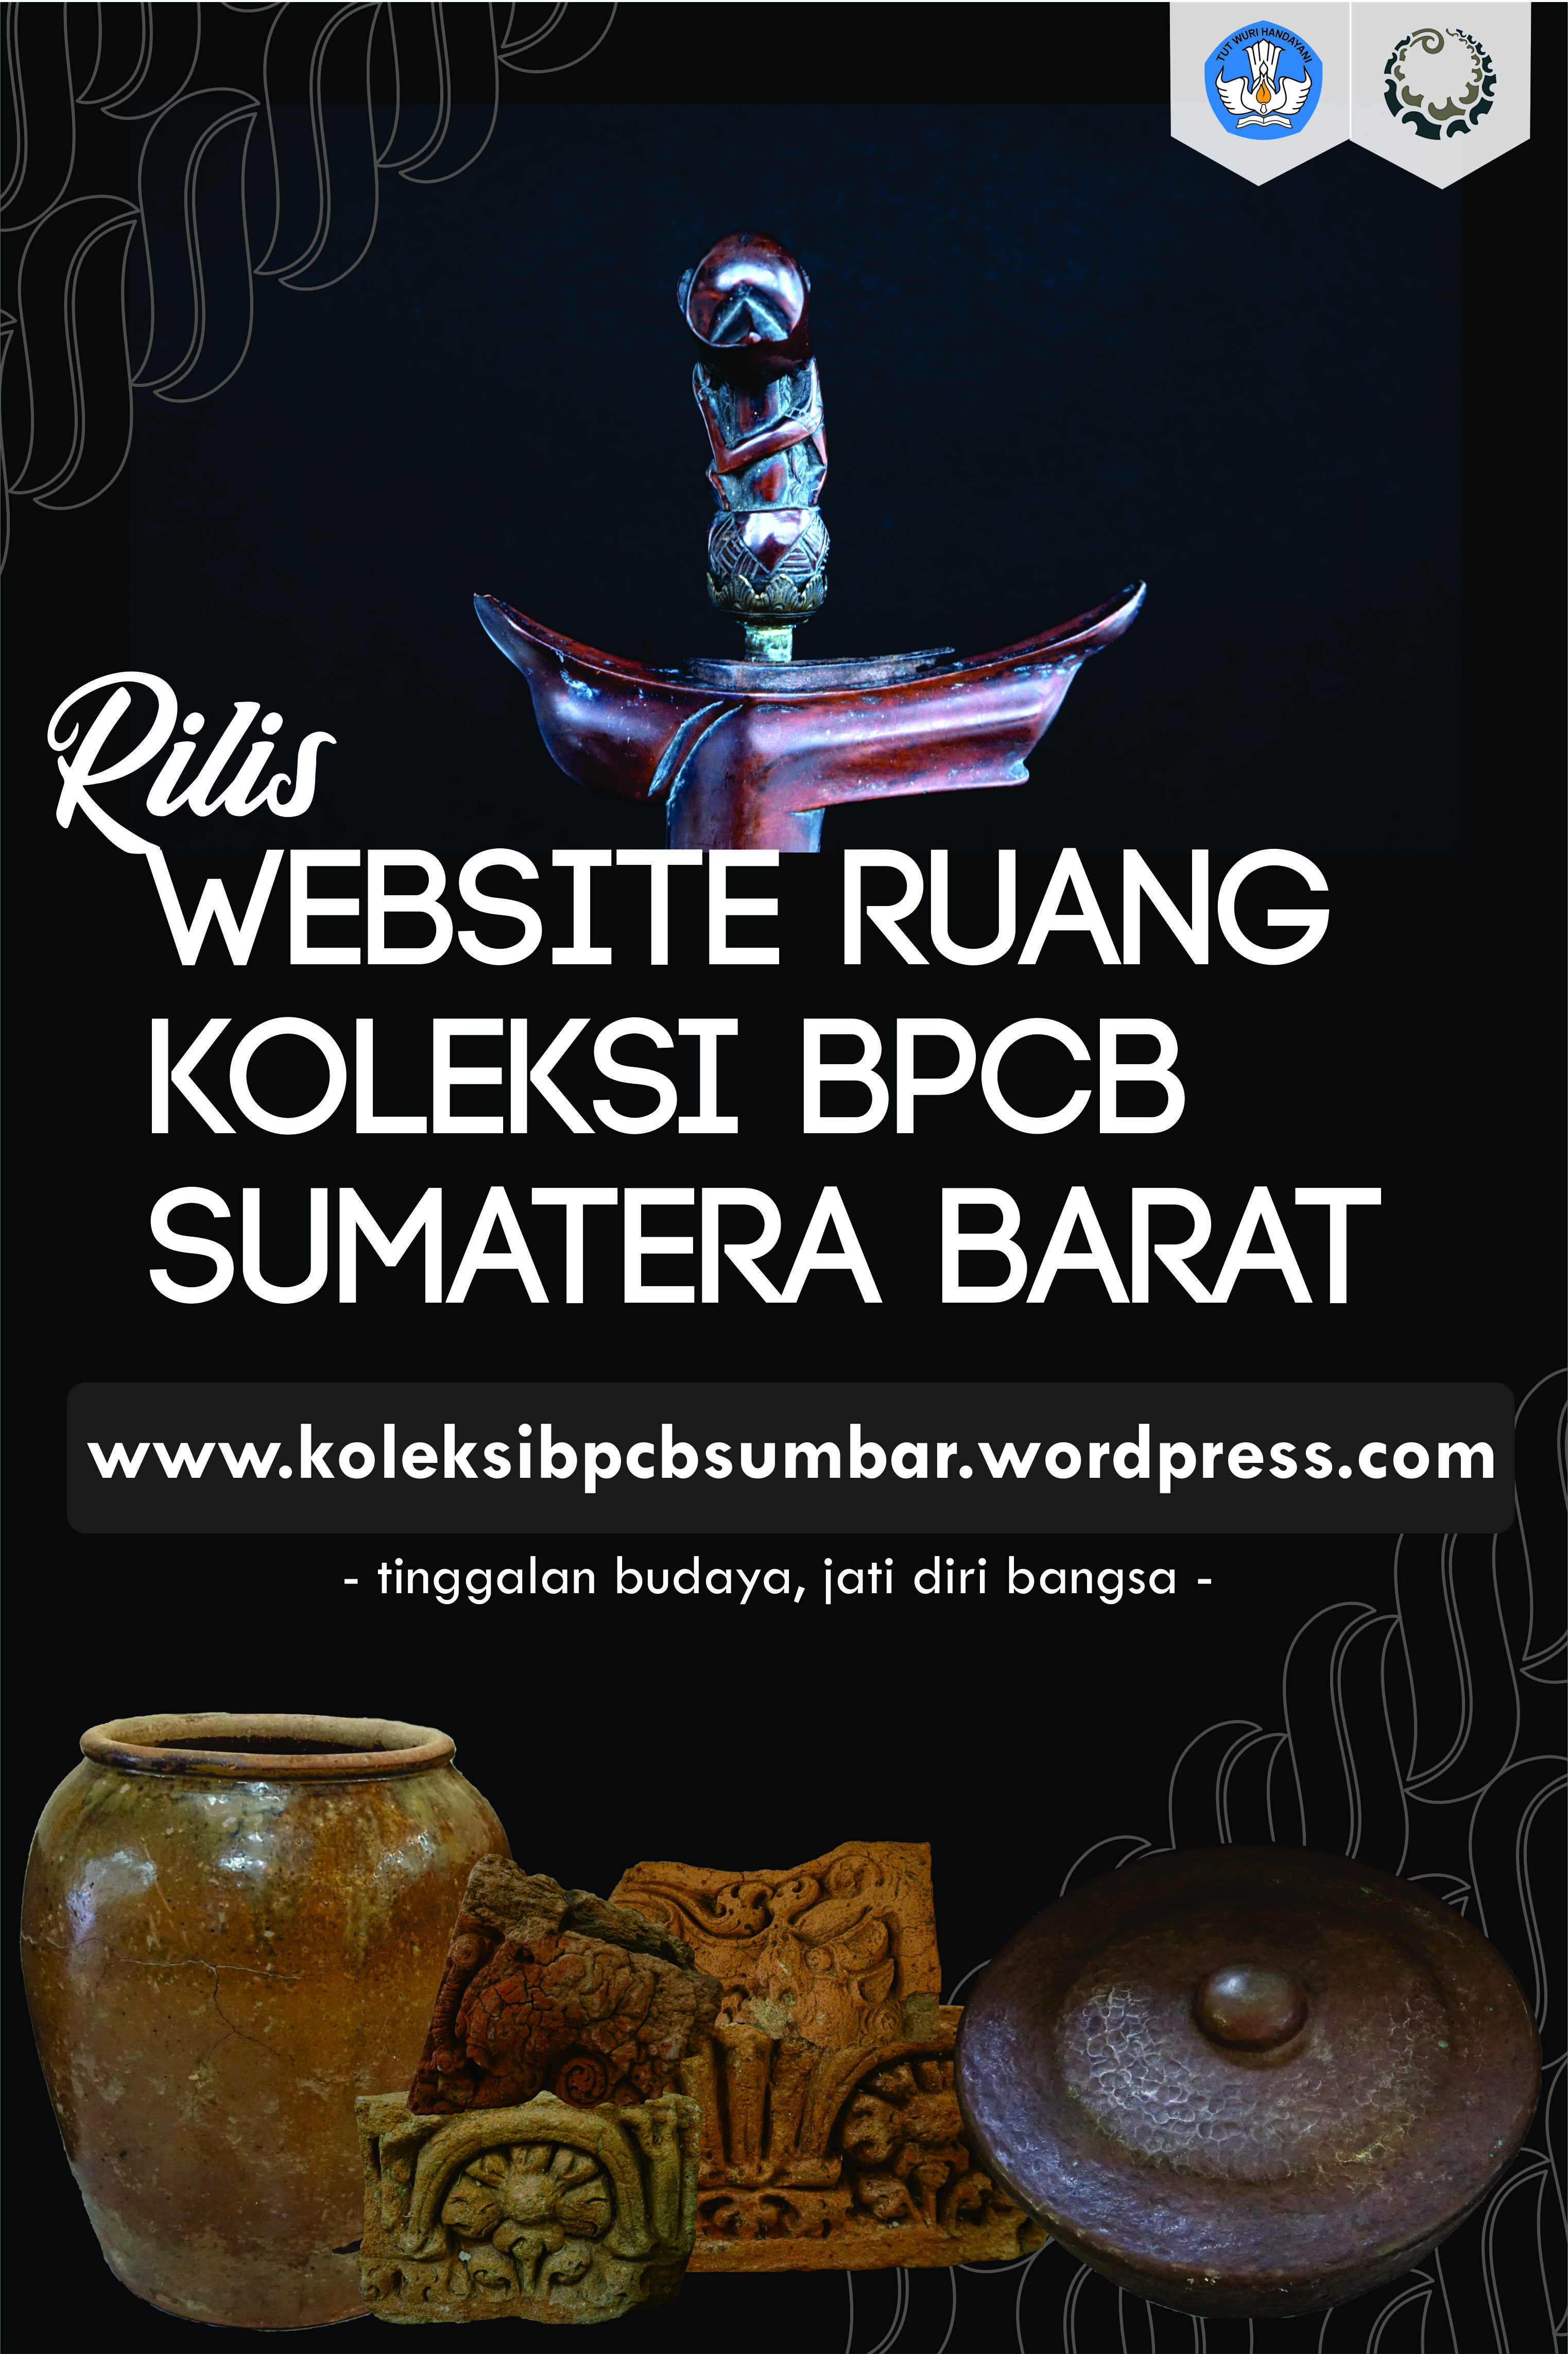 BPCB Sumatera Barat Rilis Website Ruang Koleksi Cagar Budaya